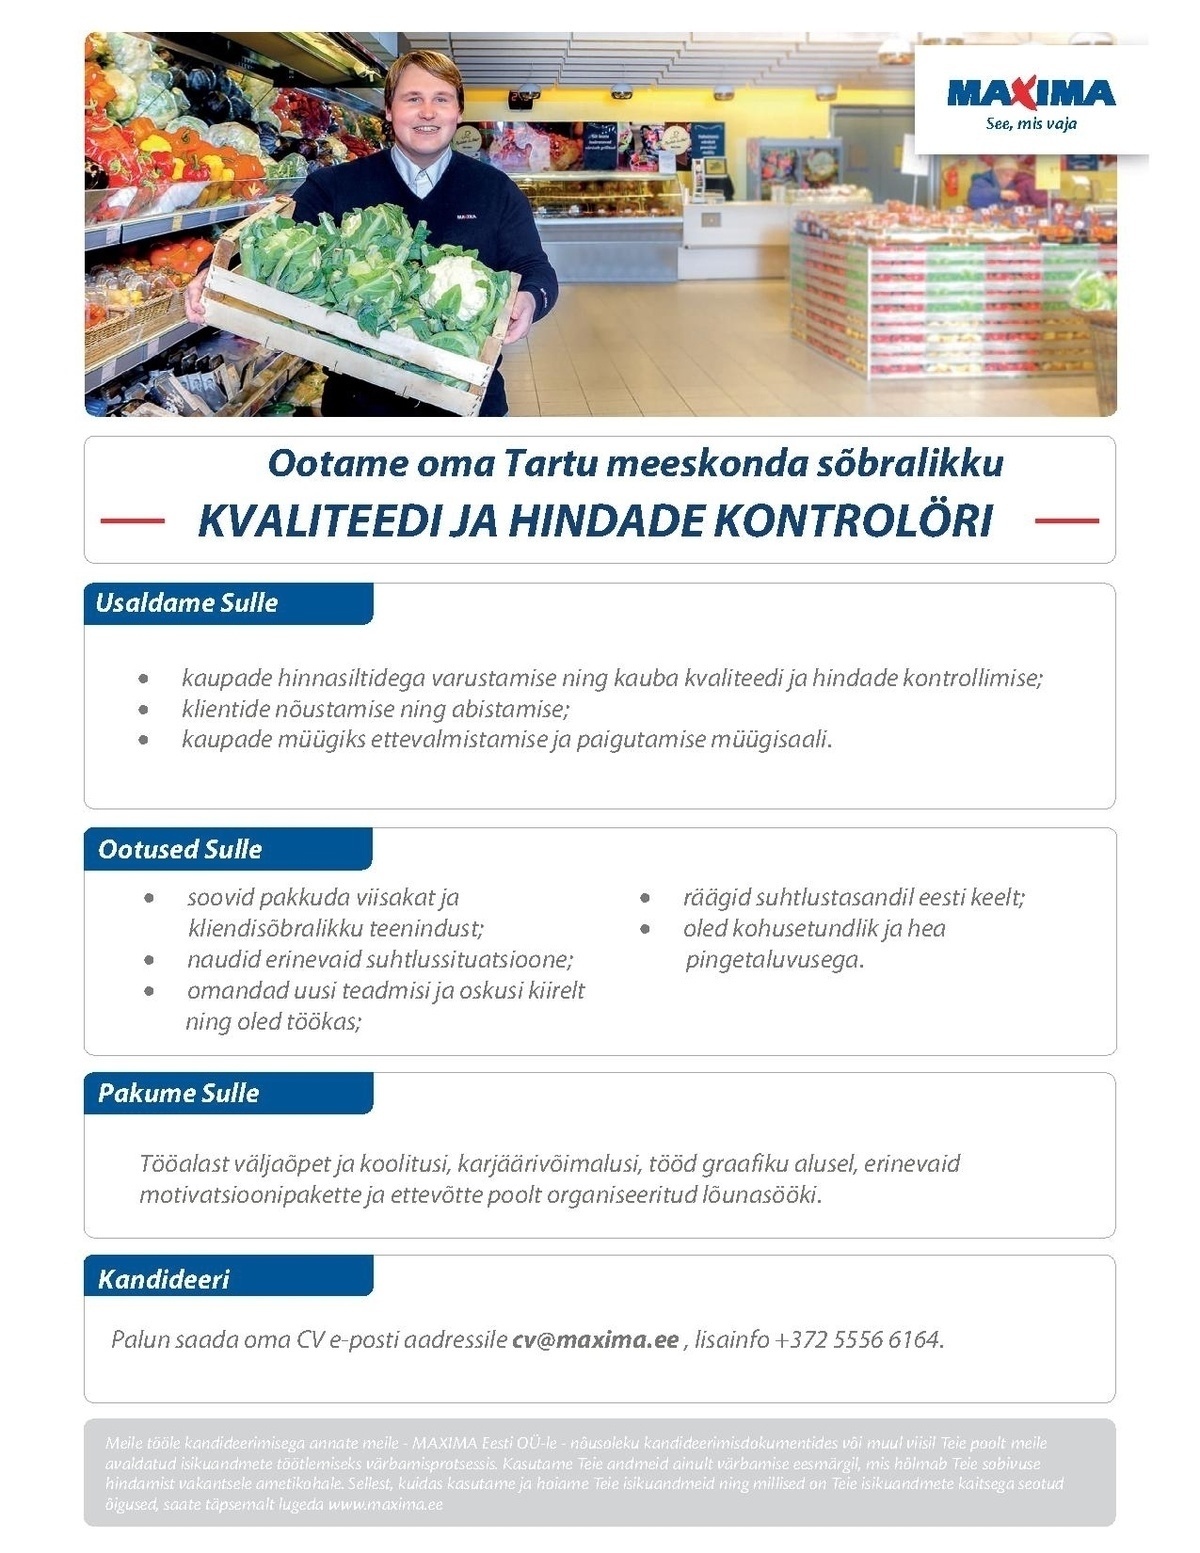 Maxima Eesti OÜ Kvaliteedi ja hindade kontrolör Tartu Maximas (Sõbra keskus)